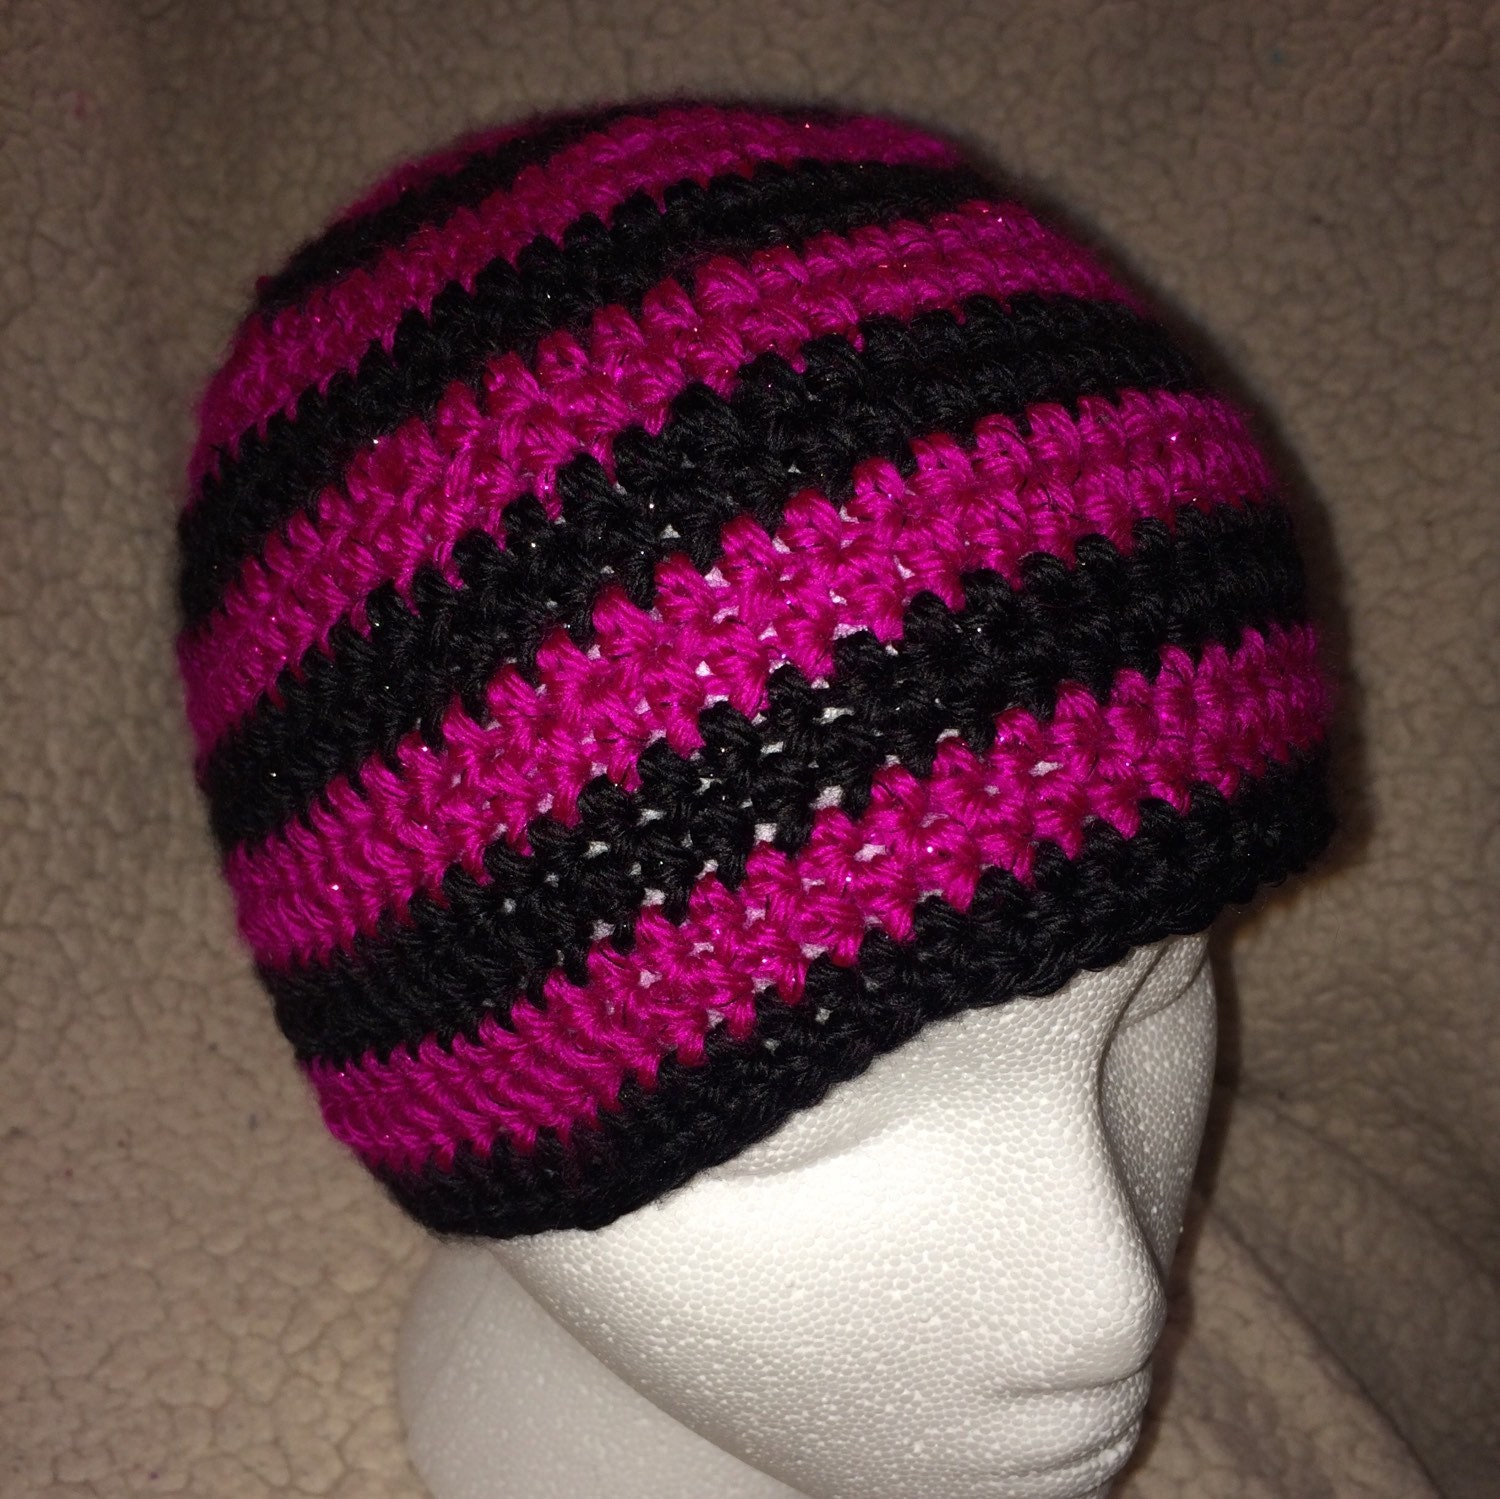 Crochet striped hat crochet striped beanie crochet hat